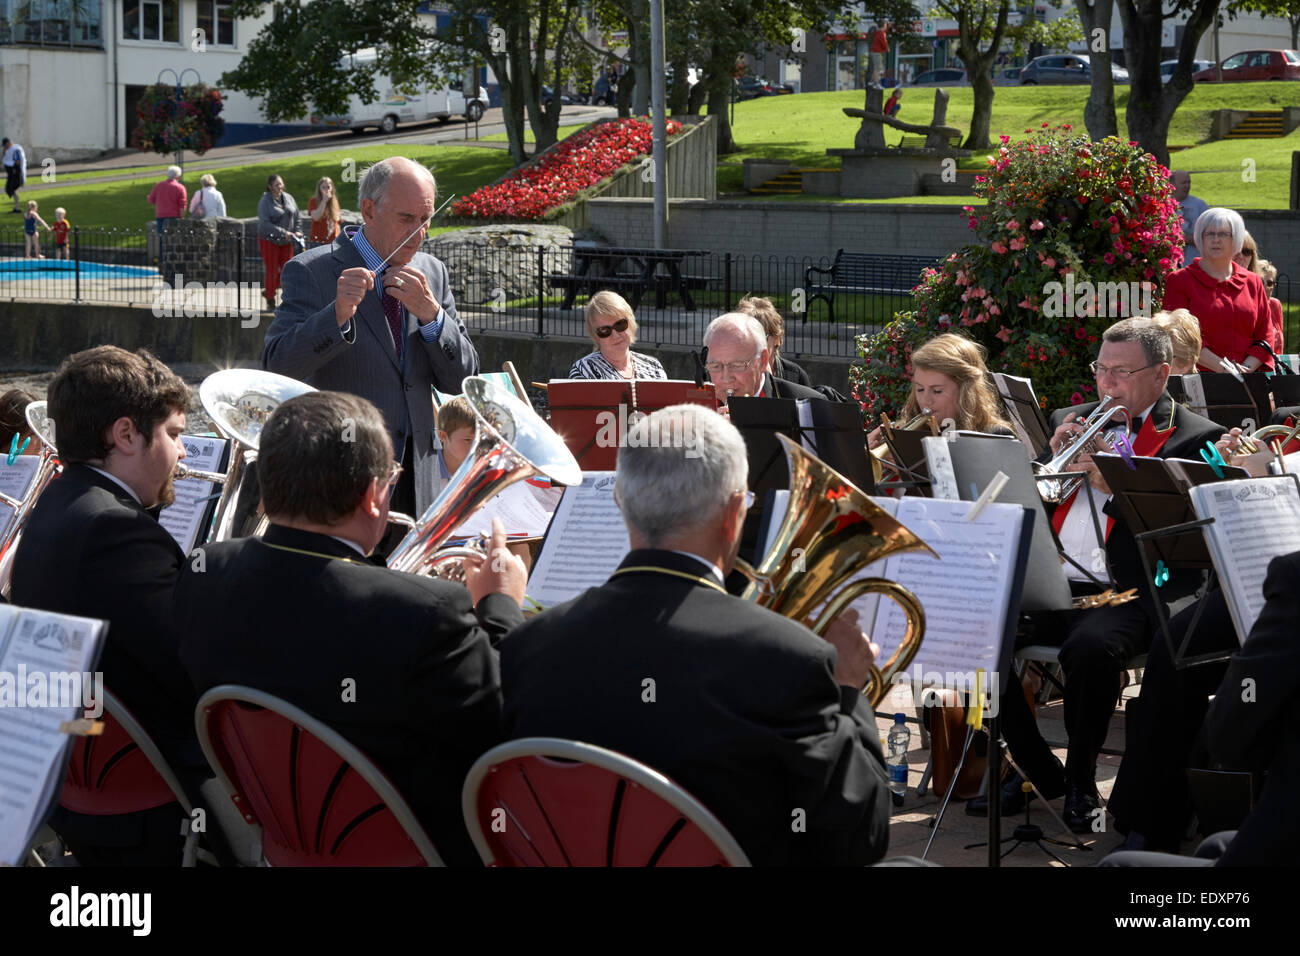 Le brass band jouant dehors à un événement d'été au Royaume-Uni Banque D'Images